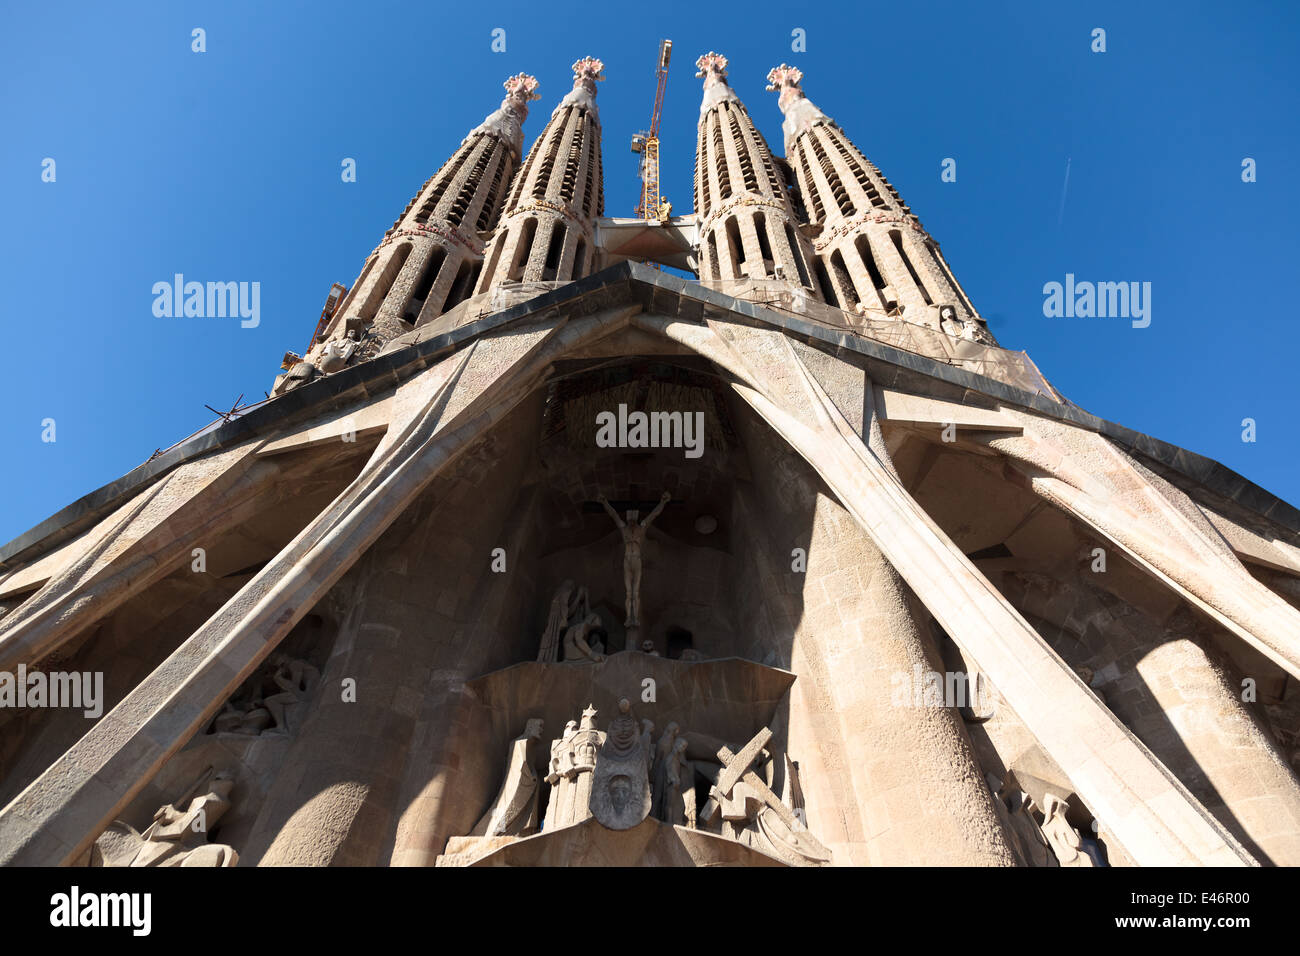 BARCELONA, España - 07 de julio: La Sagrada Familia - la impresionante catedral diseñada por Gaudí, que se construya desde 1882 y no ha terminado aún de Julio 07, 2011 en Barcelona, España. Foto de stock